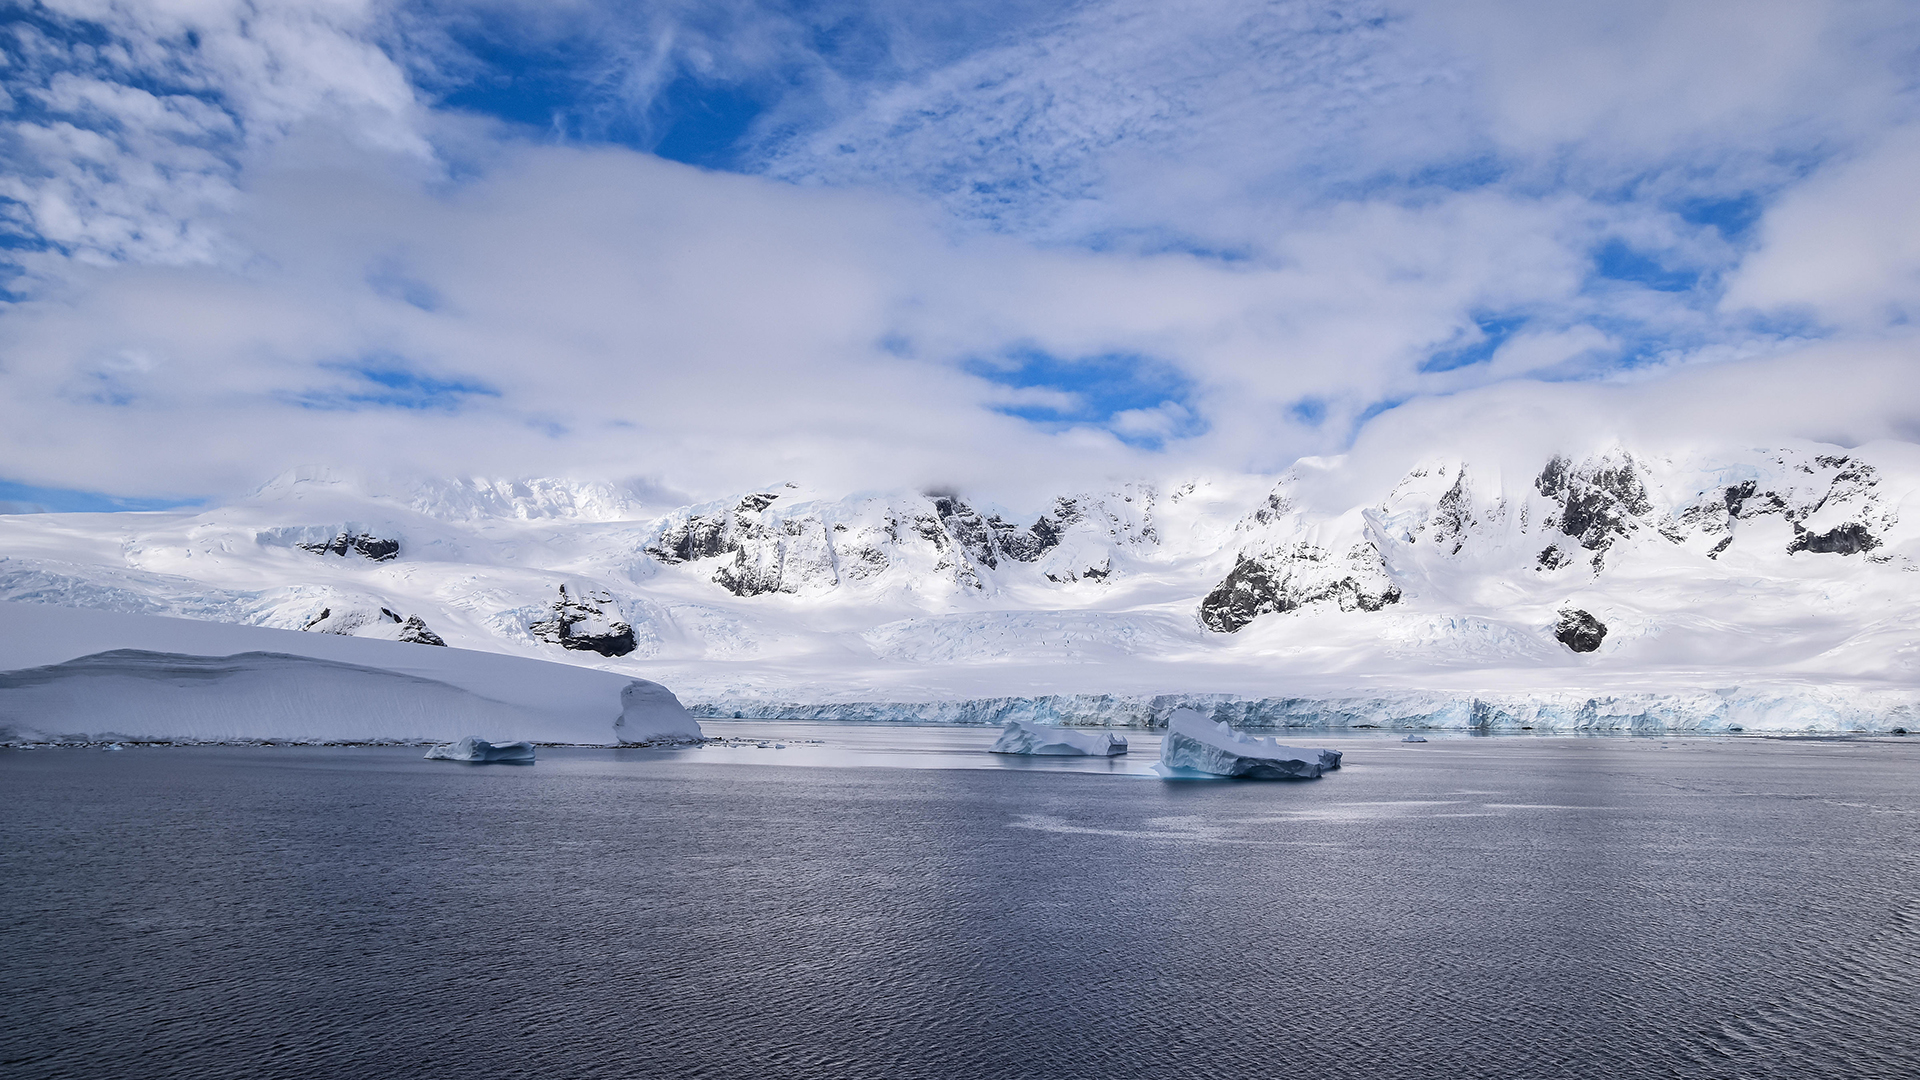 Eis- und schneebedeckte Küste in der Antarktis. | picture alliance / Zoonar